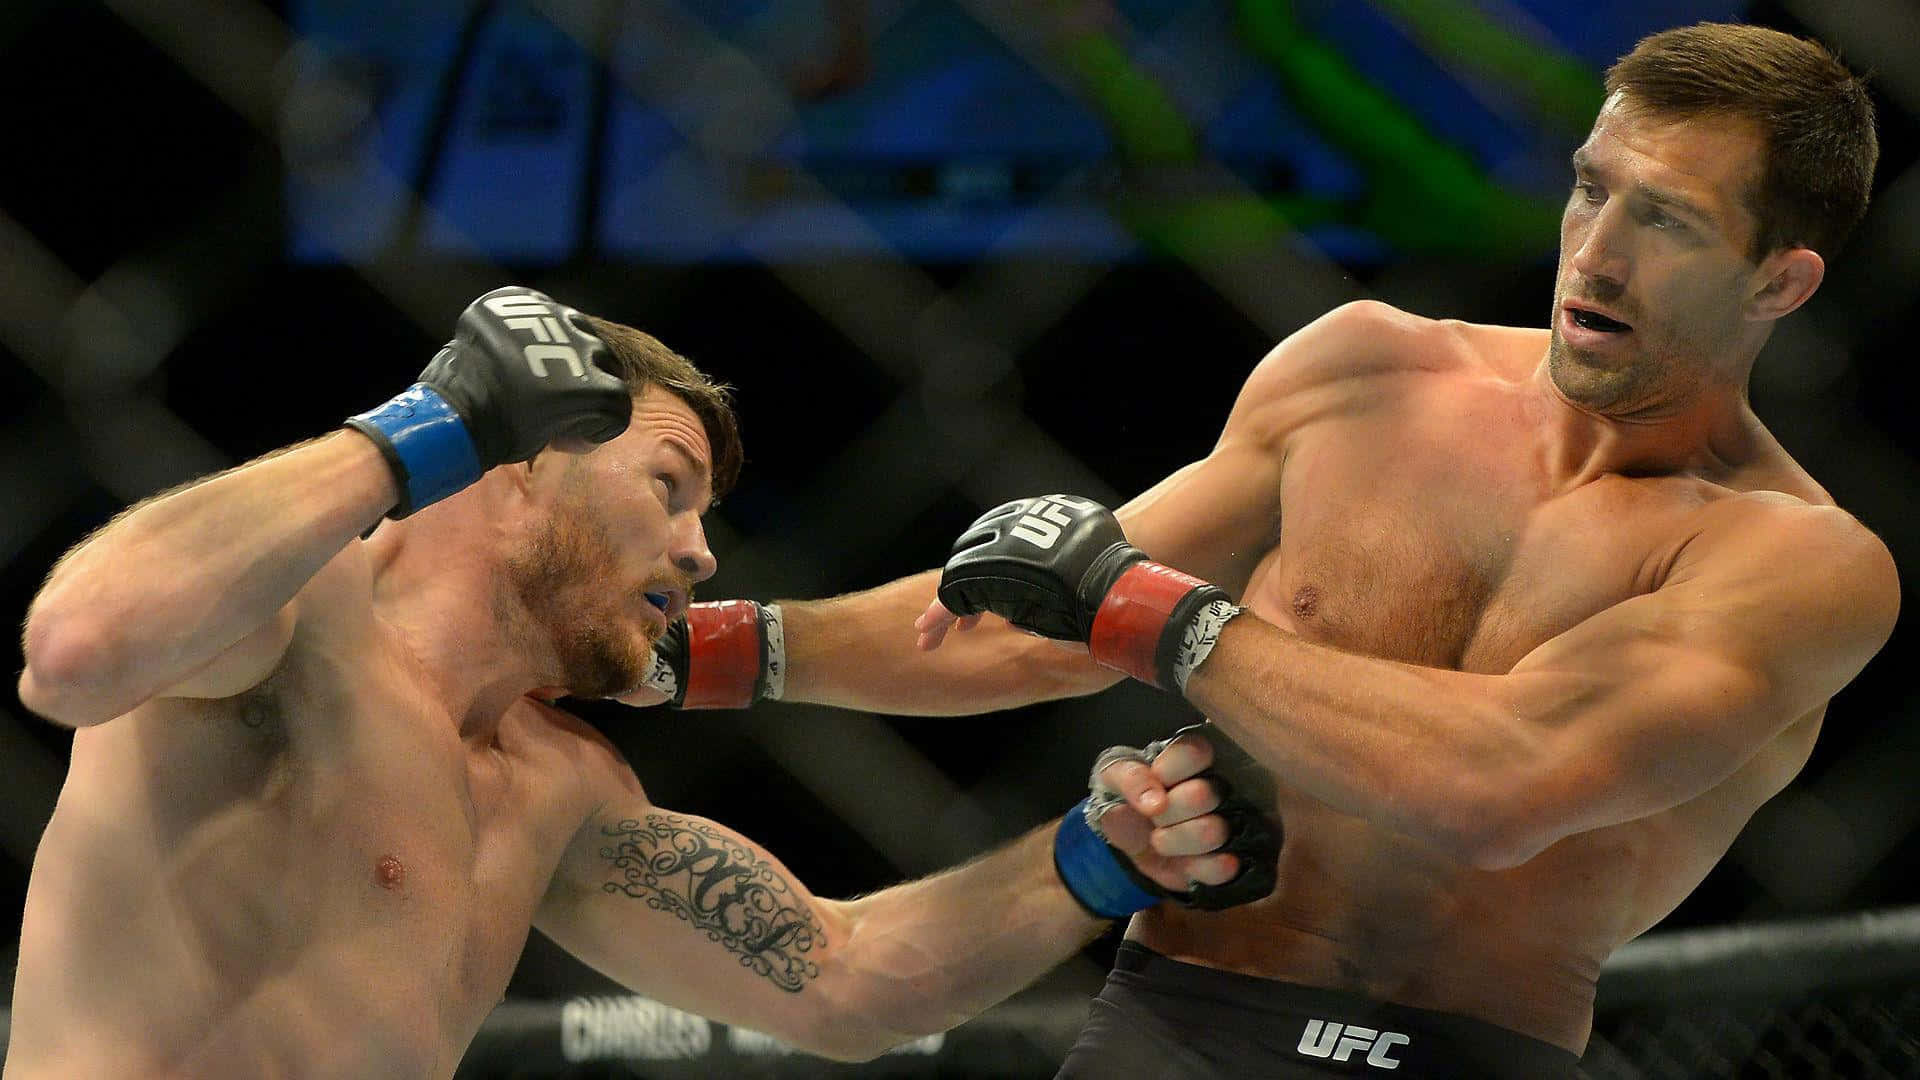 MMA-atleter Luke Rockhold og Michael Bisping UFC 199 sammenstød - Jublende. Wallpaper